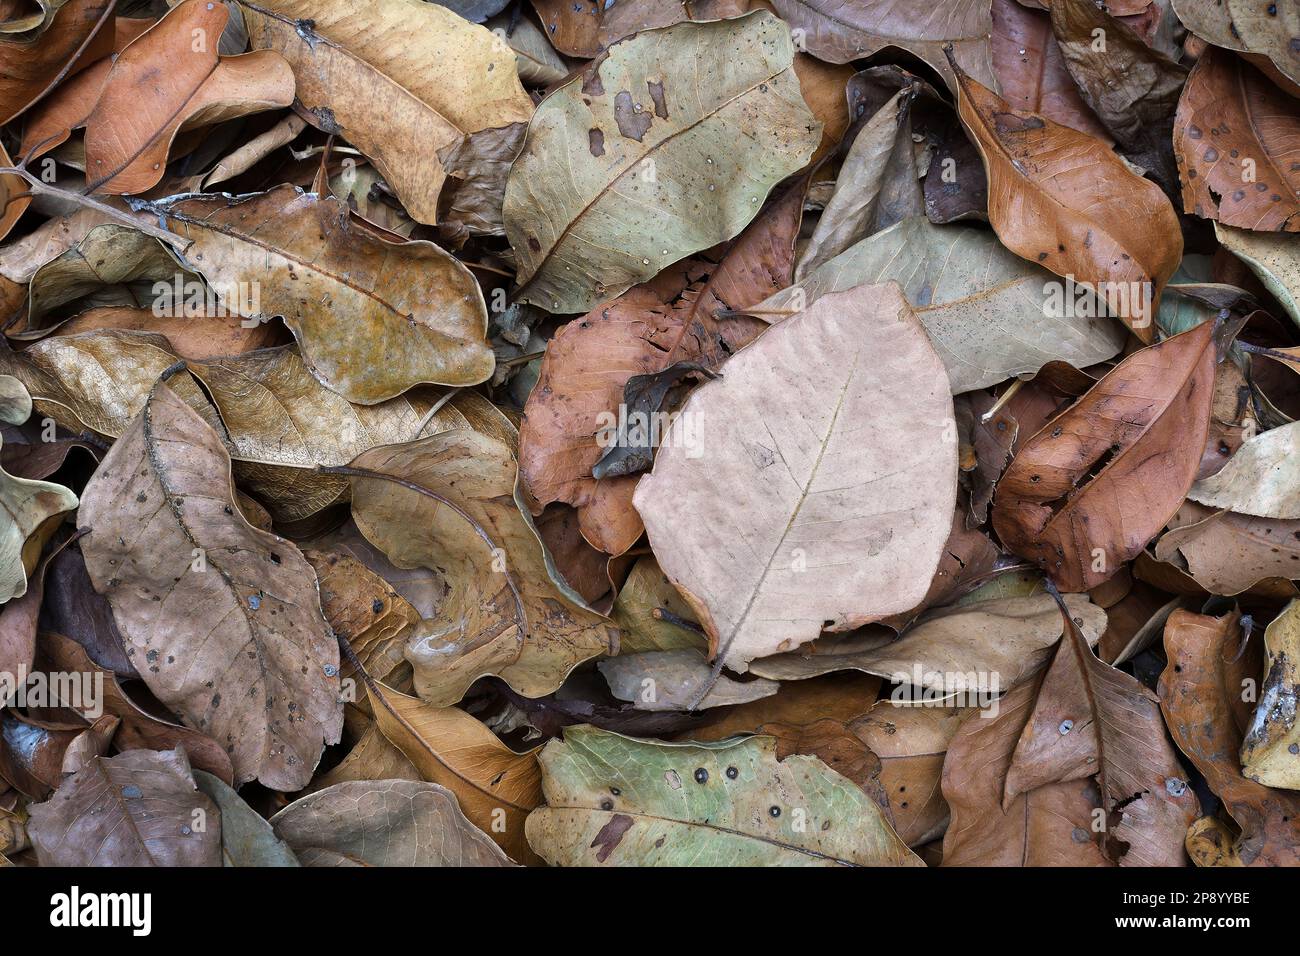 Eine flache Draufsicht auf einen Haufen trockener, verwelkter Herbst-/Herbstblätter, die das Bild in einem weichen, gleichmäßigen Licht füllen und in einem Studio aufgenommen werden Stockfoto